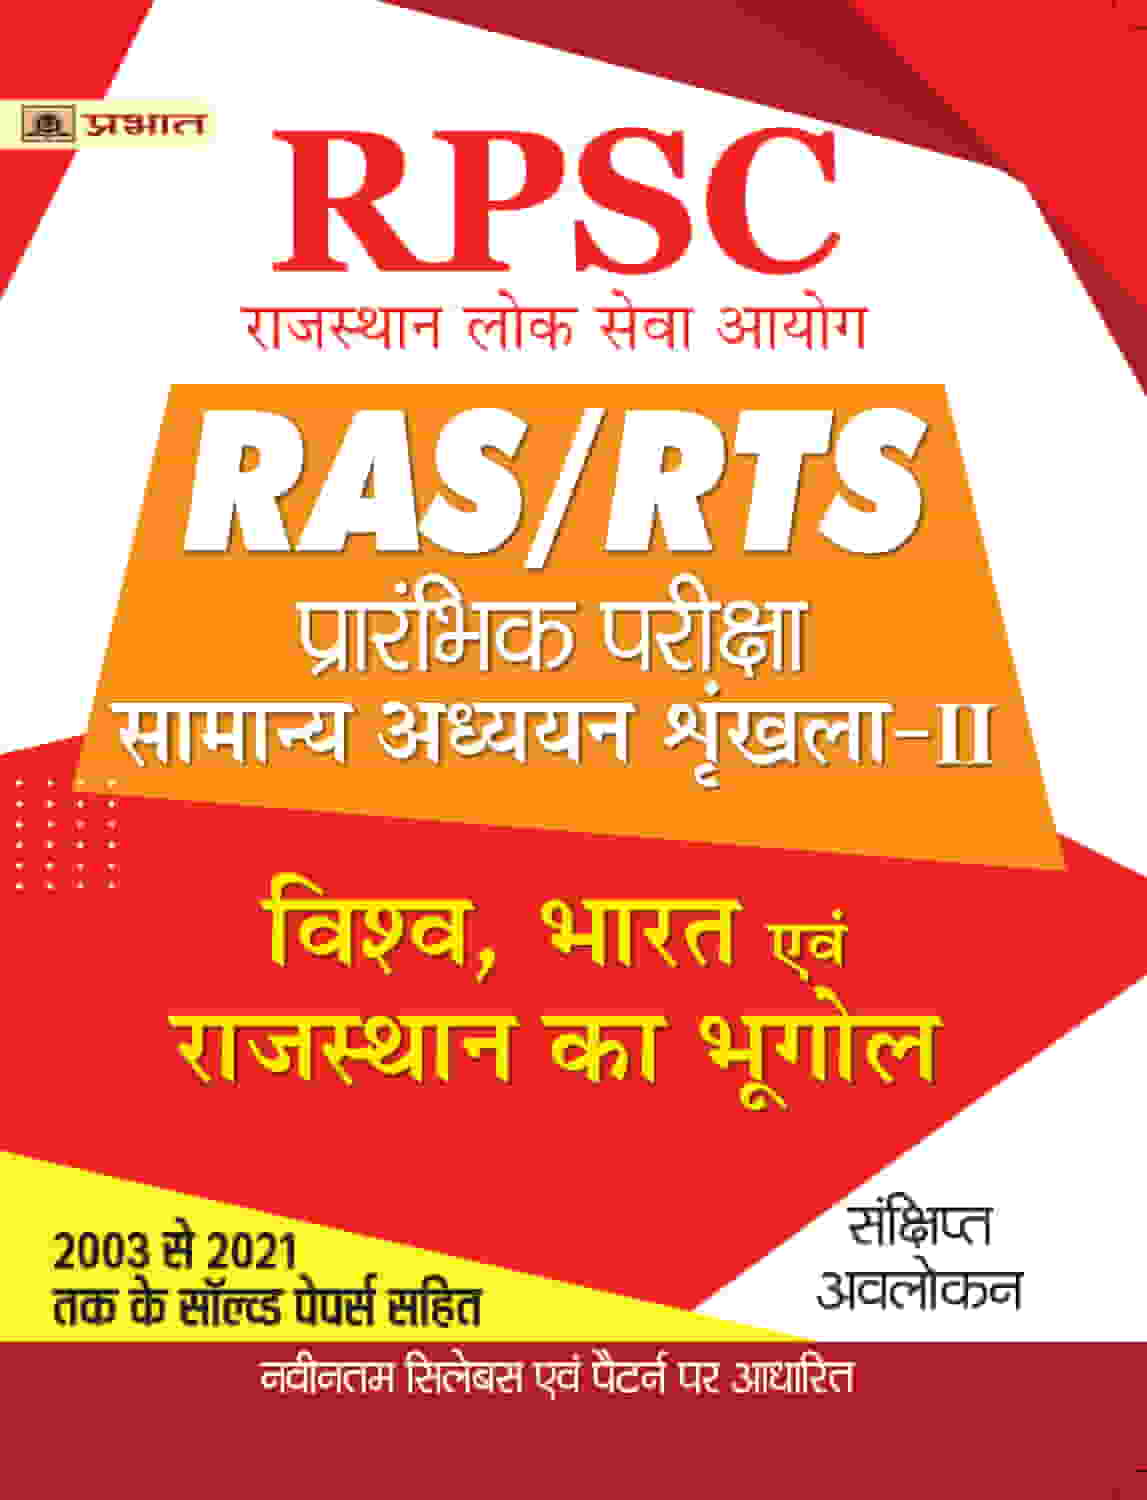 RPSC RAS/RTS Prarambhik Pariksha Vishav, Bharat Evam Rajasthan Ka Bhug... 